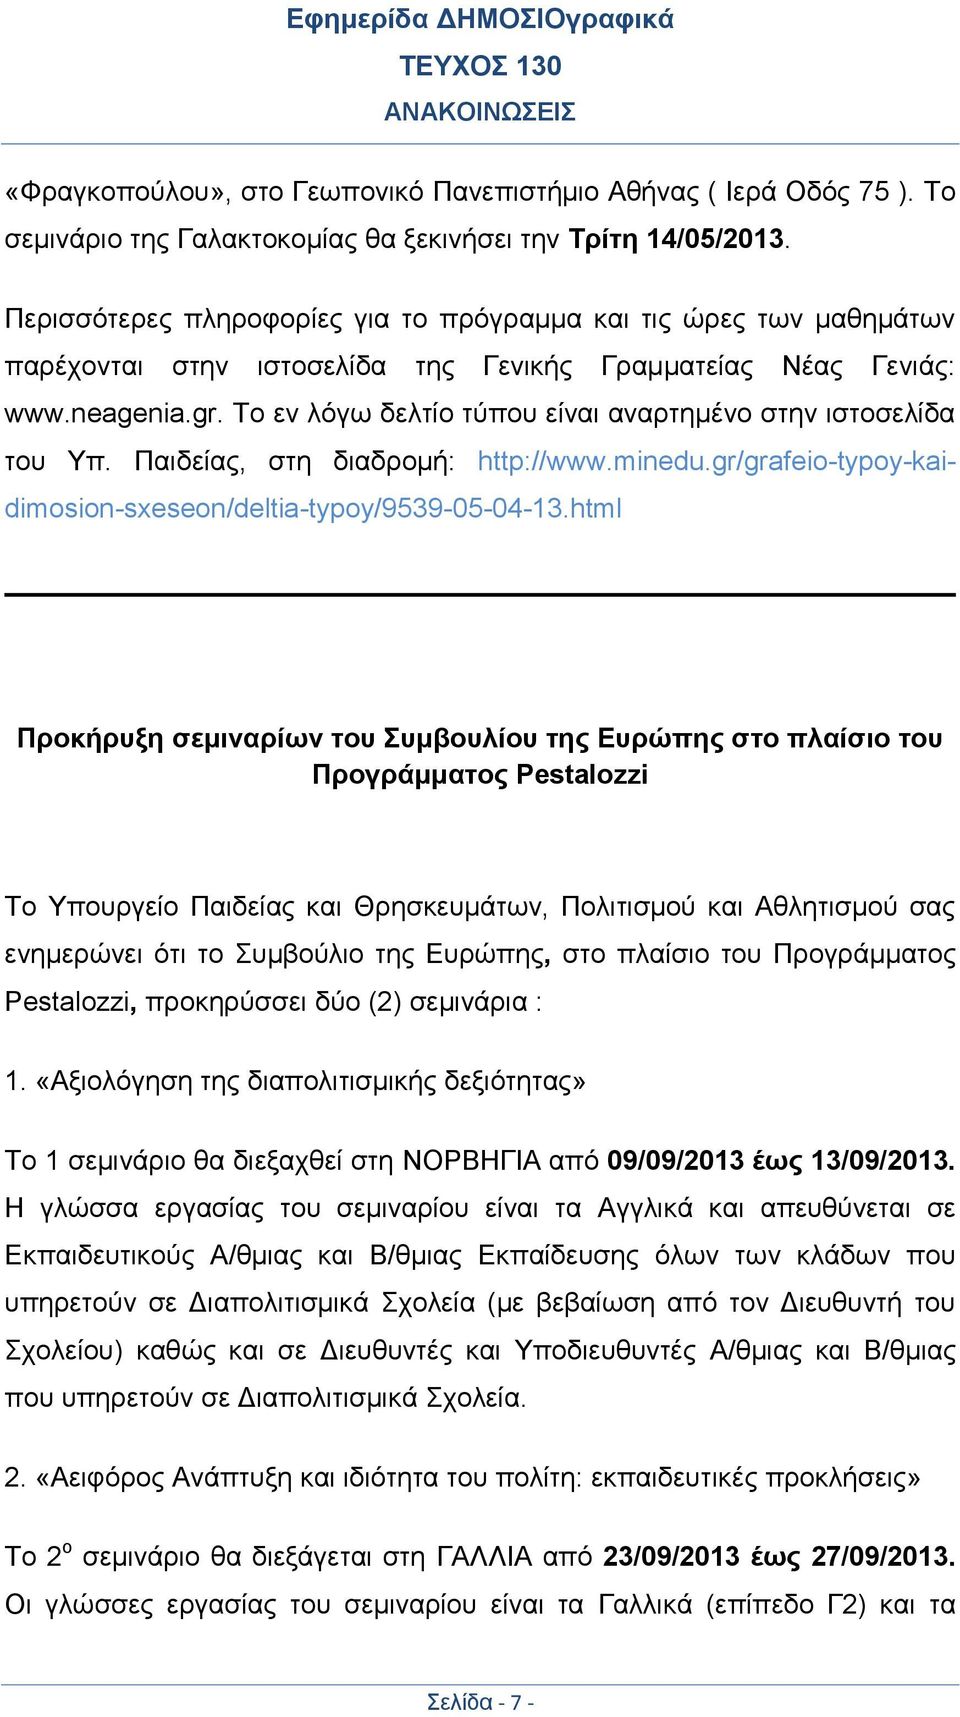 Το εν λόγω δελτίο τύπου είναι αναρτημένο στην ιστοσελίδα του Υπ. Παιδείας, στη διαδρομή: http://www.minedu.gr/grafeio-typoy-kaidimosion-sxeseon/deltia-typoy/9539-05-04-13.